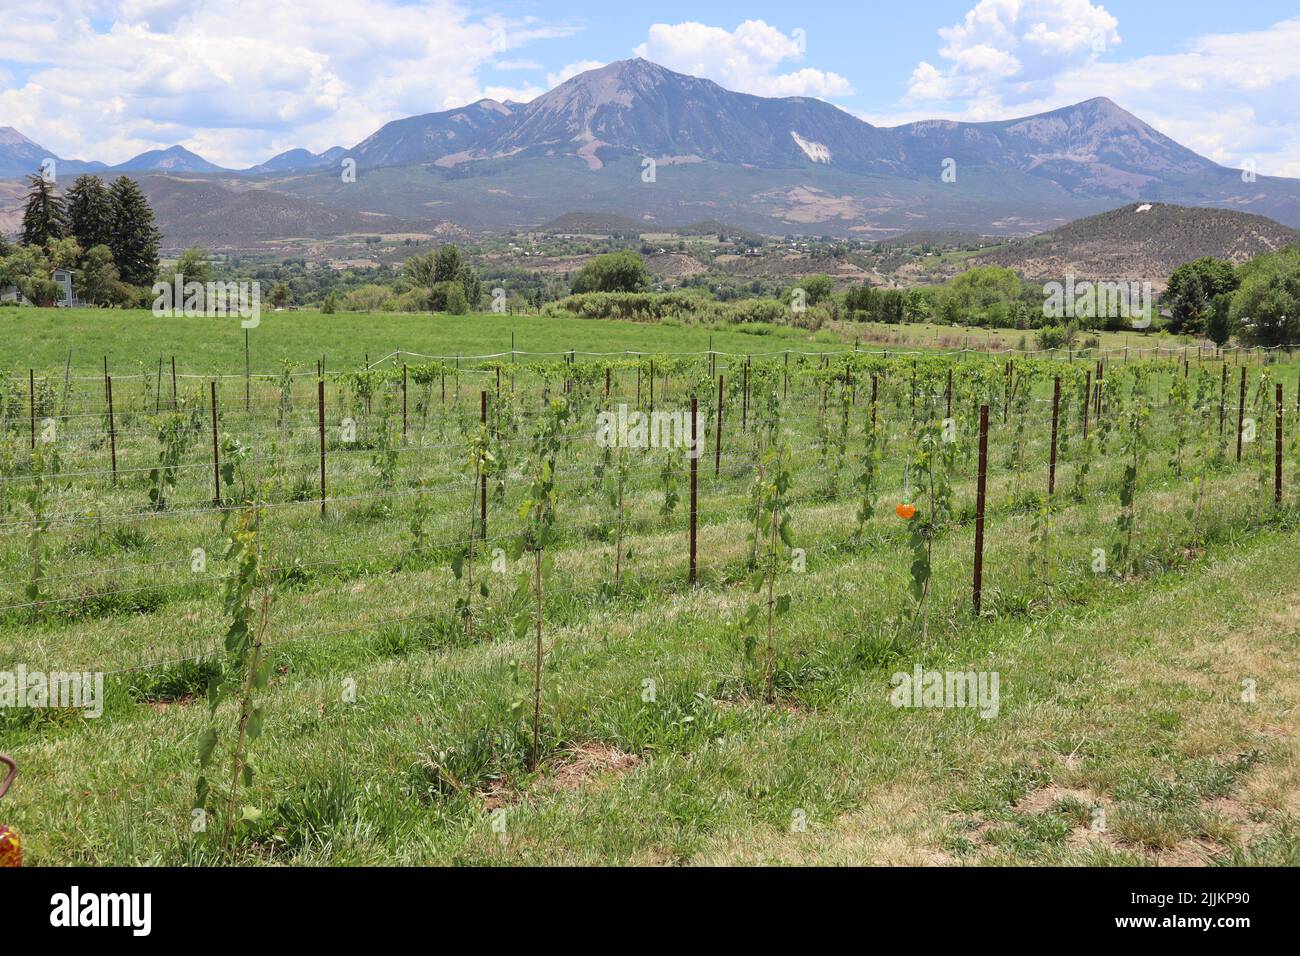 Eine malerische Landschaft mit einem Weinberg und einem Berg im Hintergrund in Paonia, Colorado, USA Stockfoto